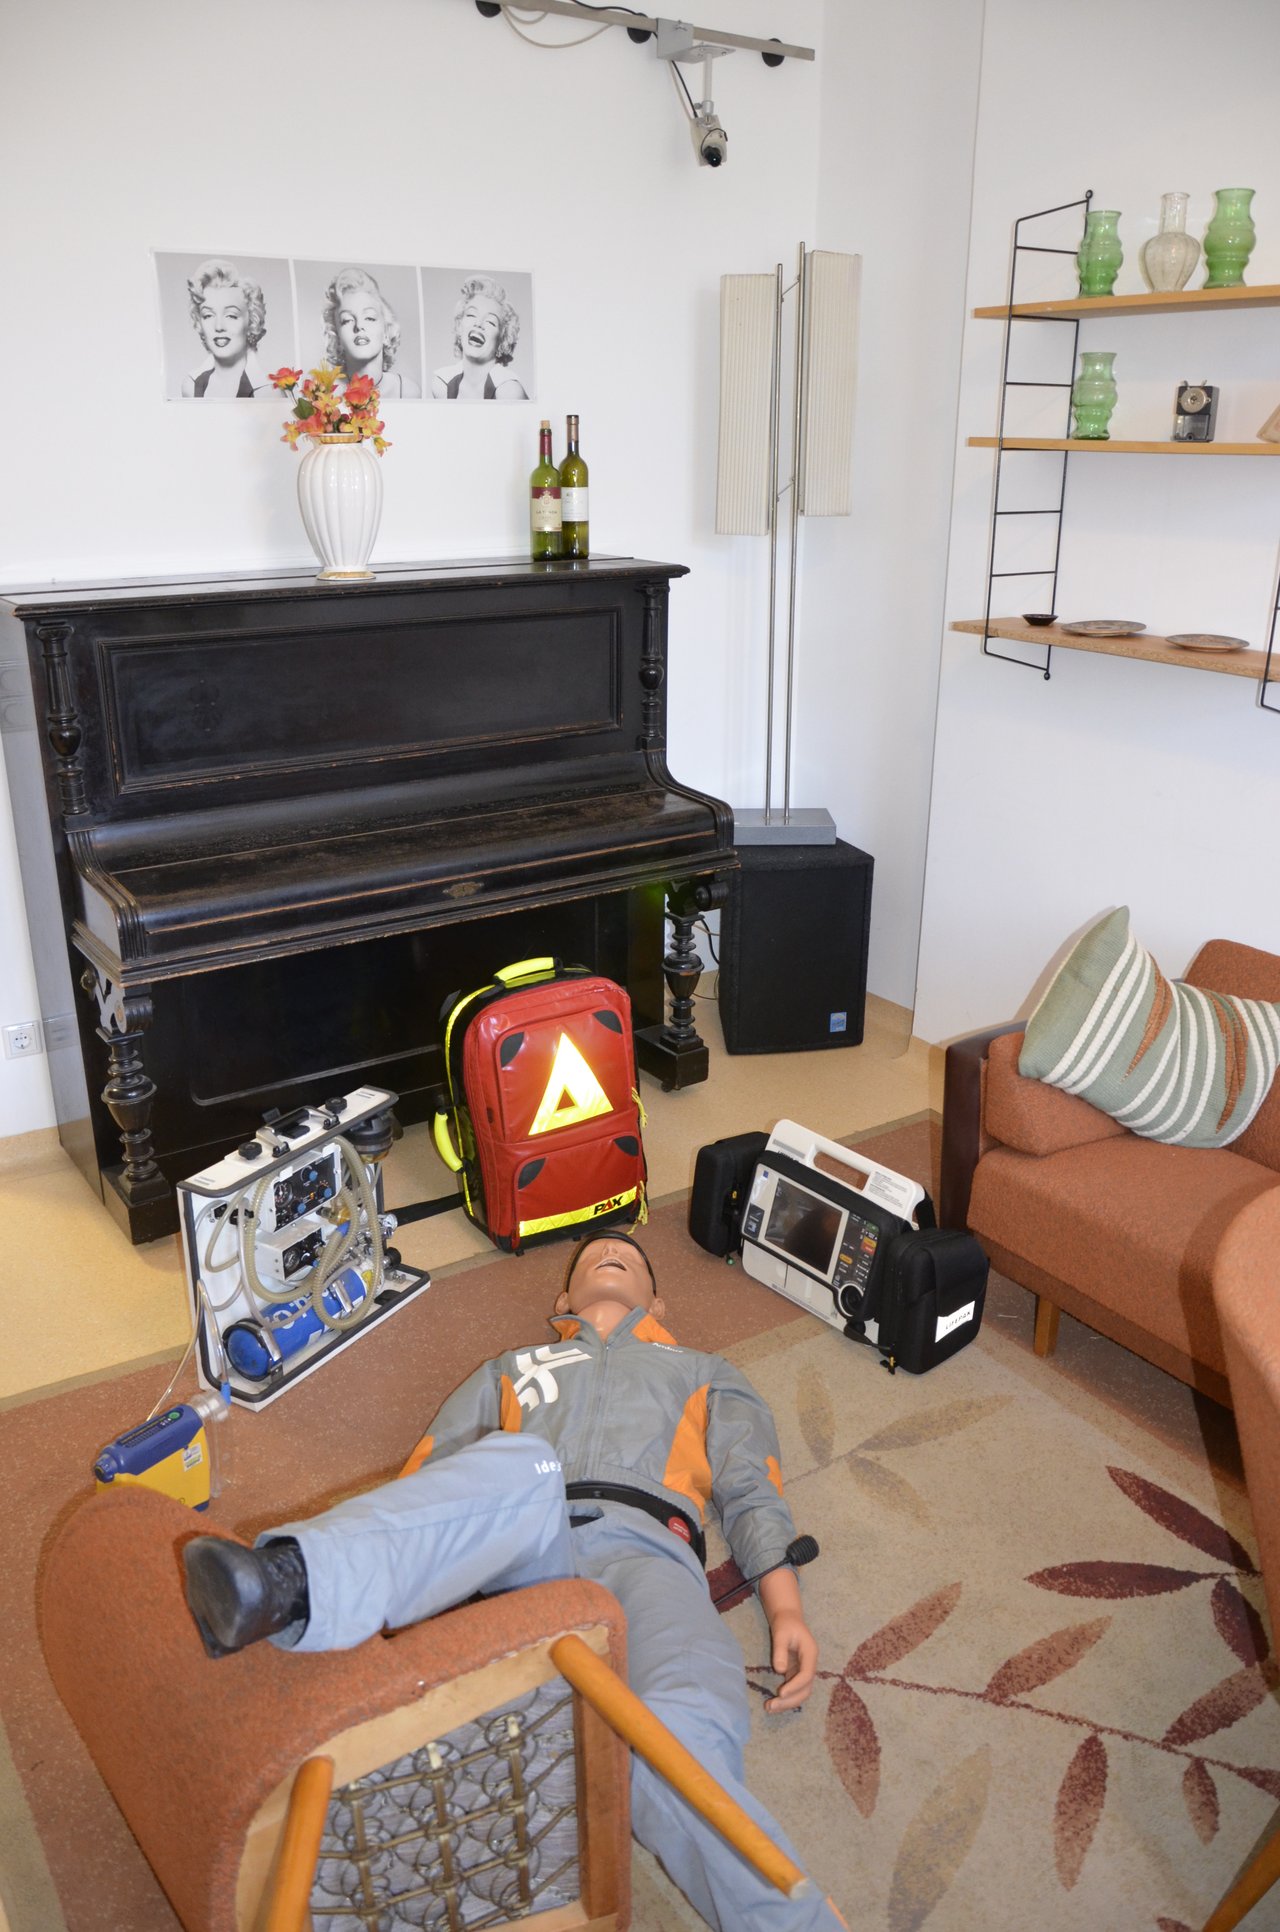 Eine Simulations-Puppe liegt auf dem Boden eines Wohnzimmers; ein Bein liegt über einem umgefallenen Sessel. Daneben stehen Notarzt-Koffer und -Utensilien.